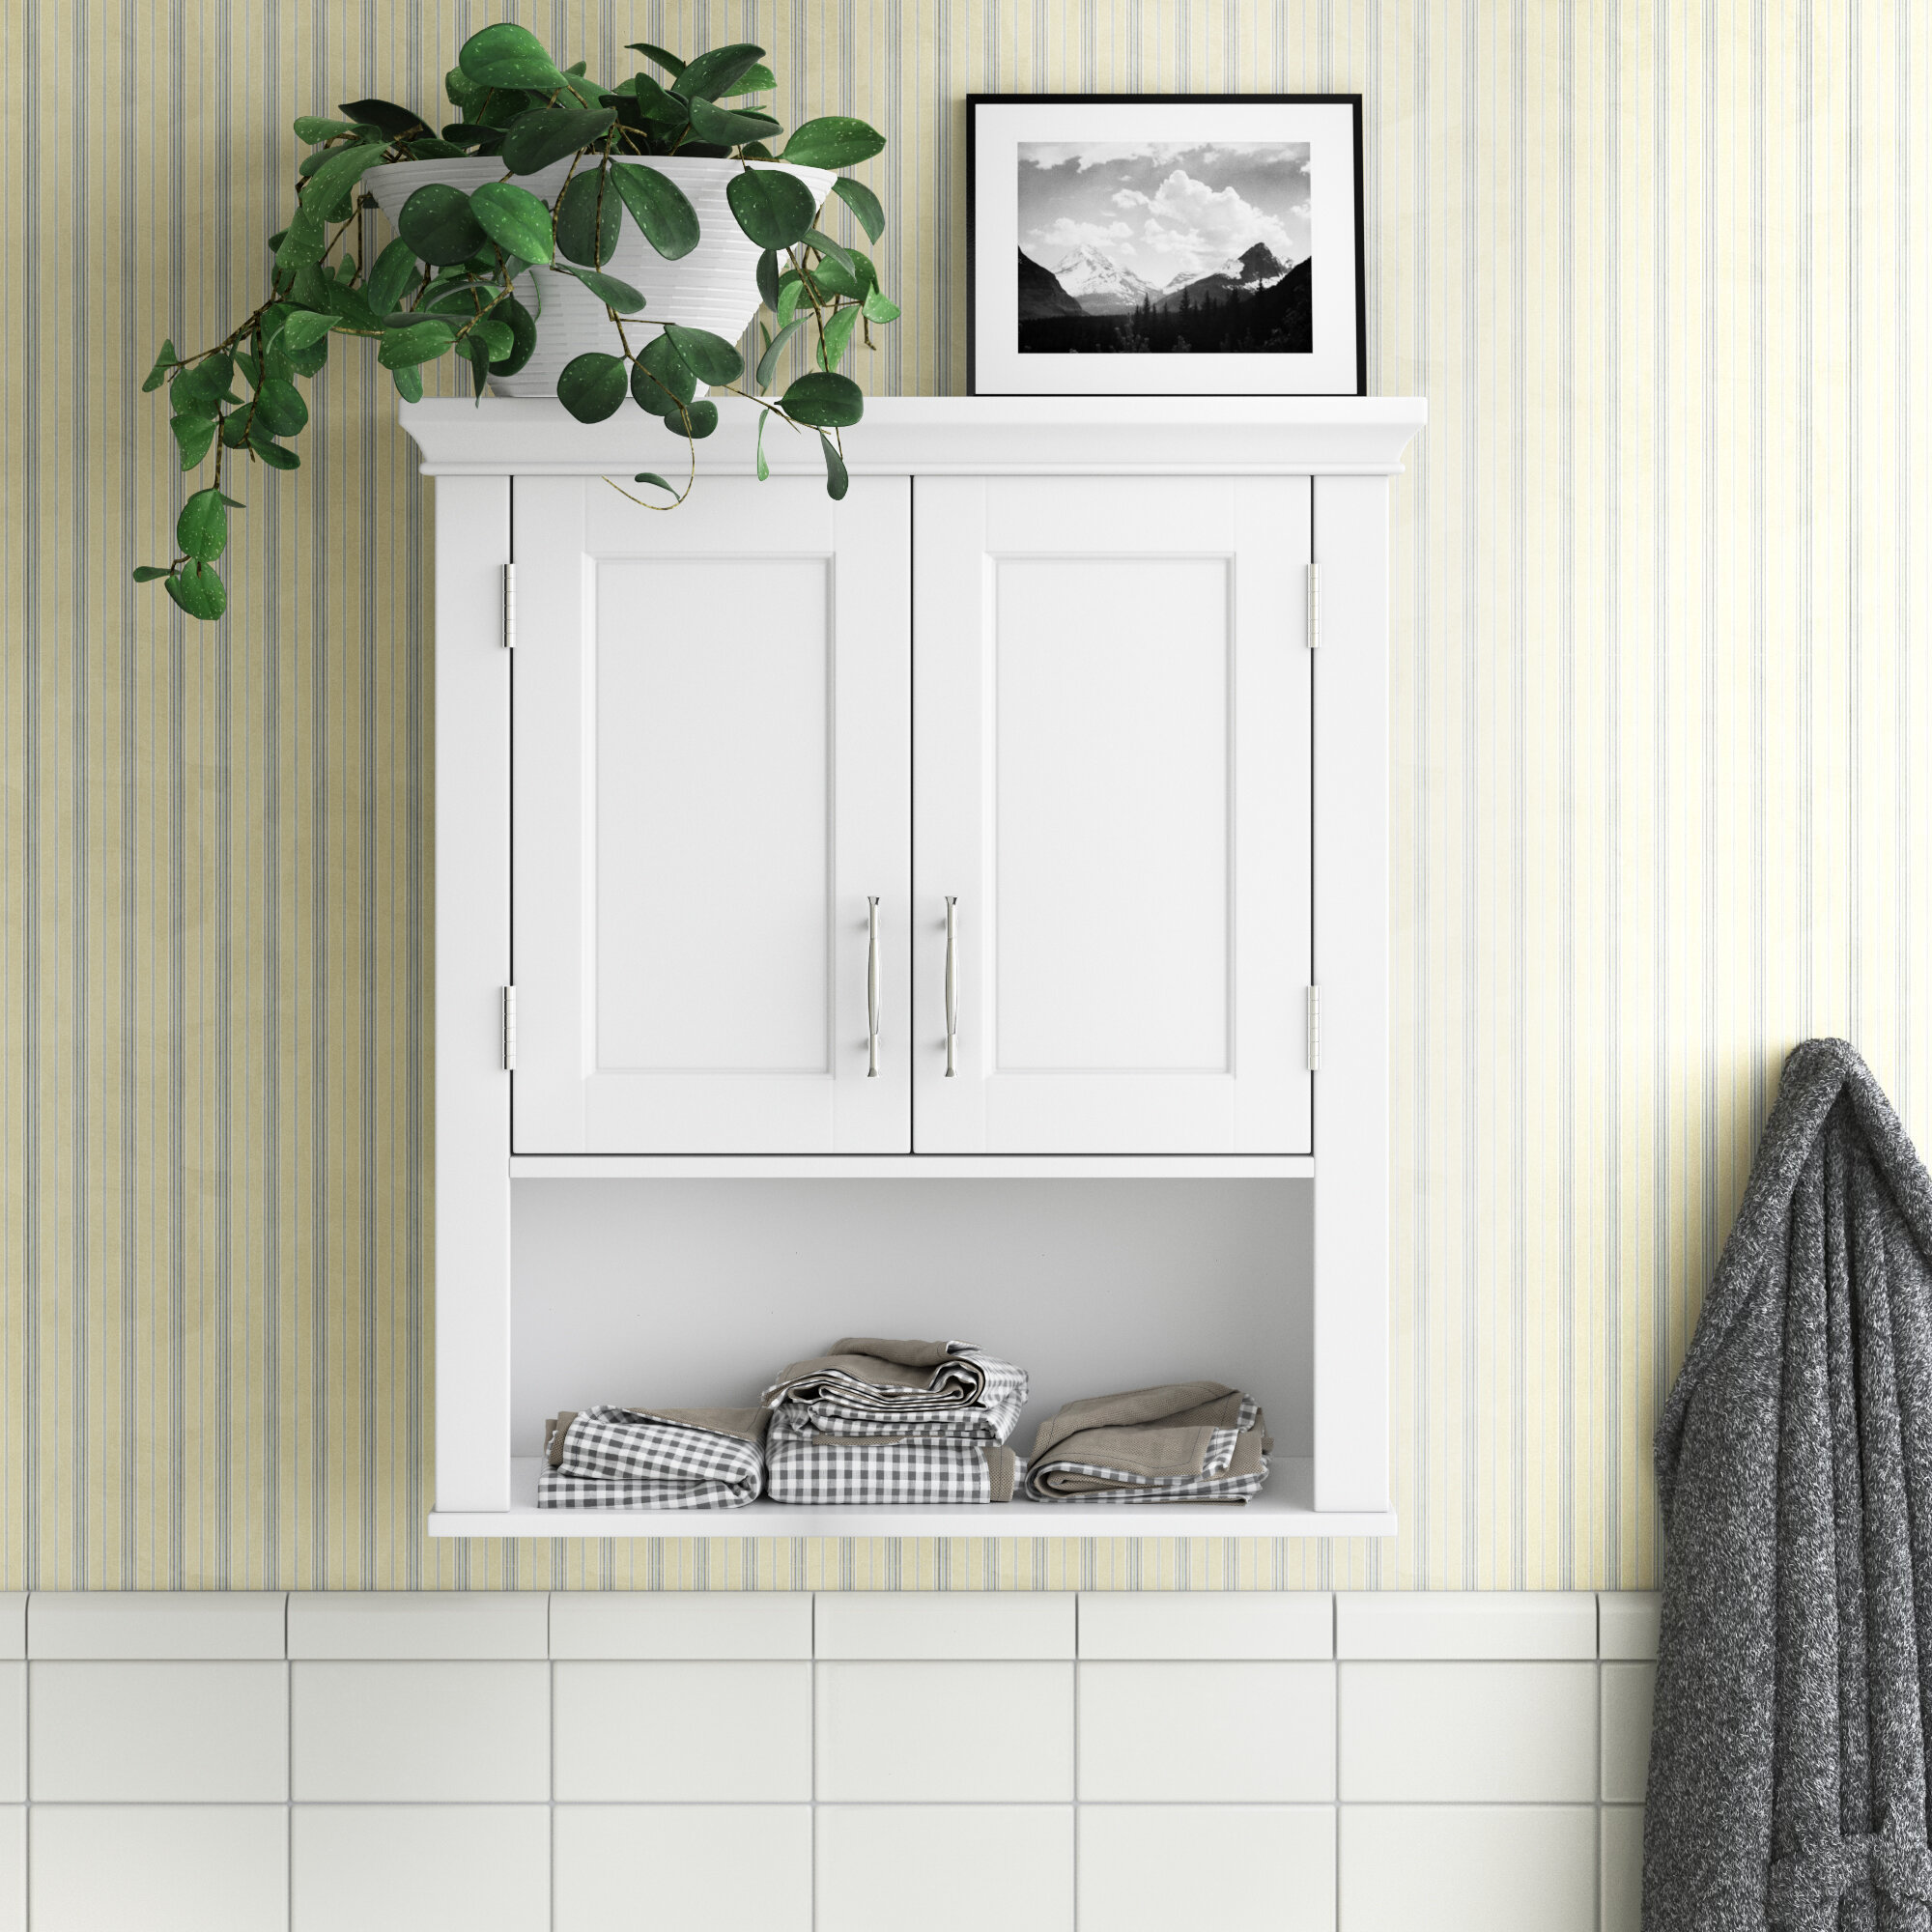 TOLEDO 17 Rustic Bathroom Shelf for Bathroom Decor, Wall Bathroom  Organizer - Set of 3 - White